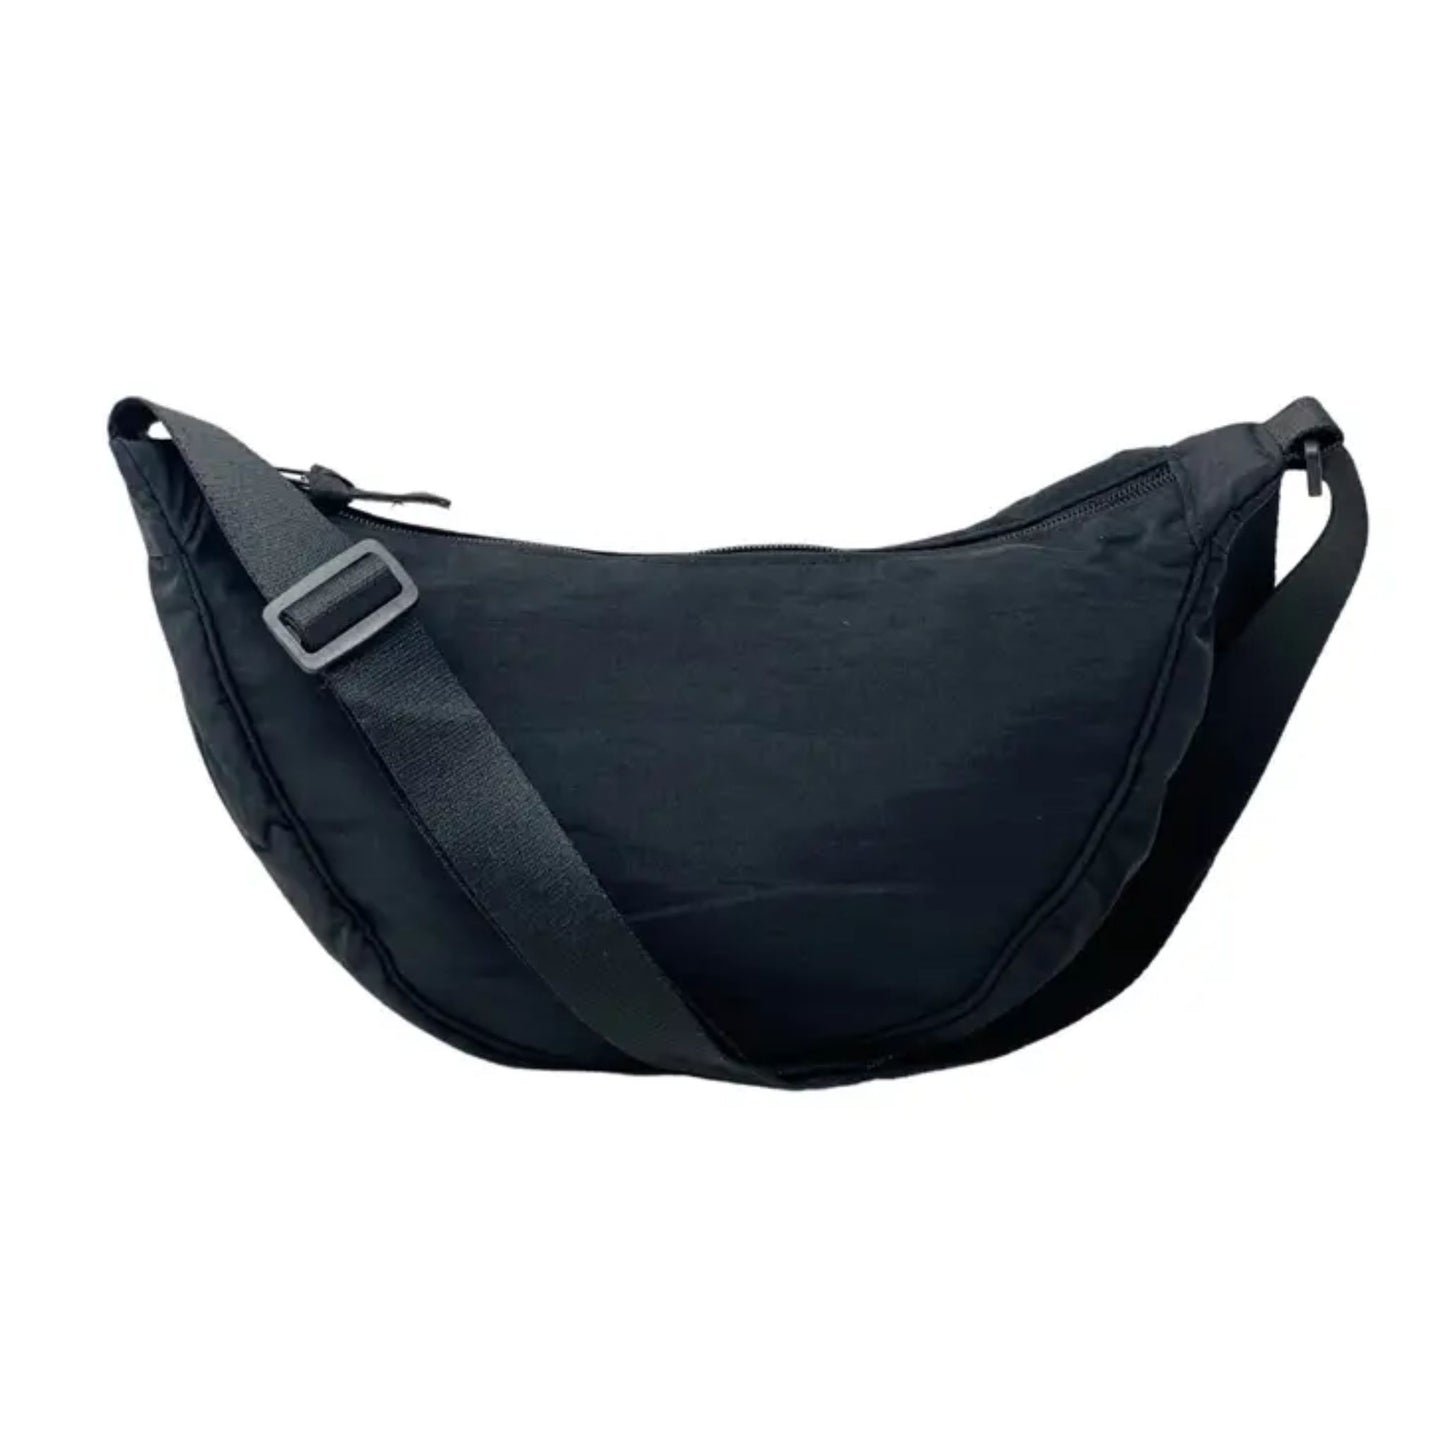 Cross body sling bag black